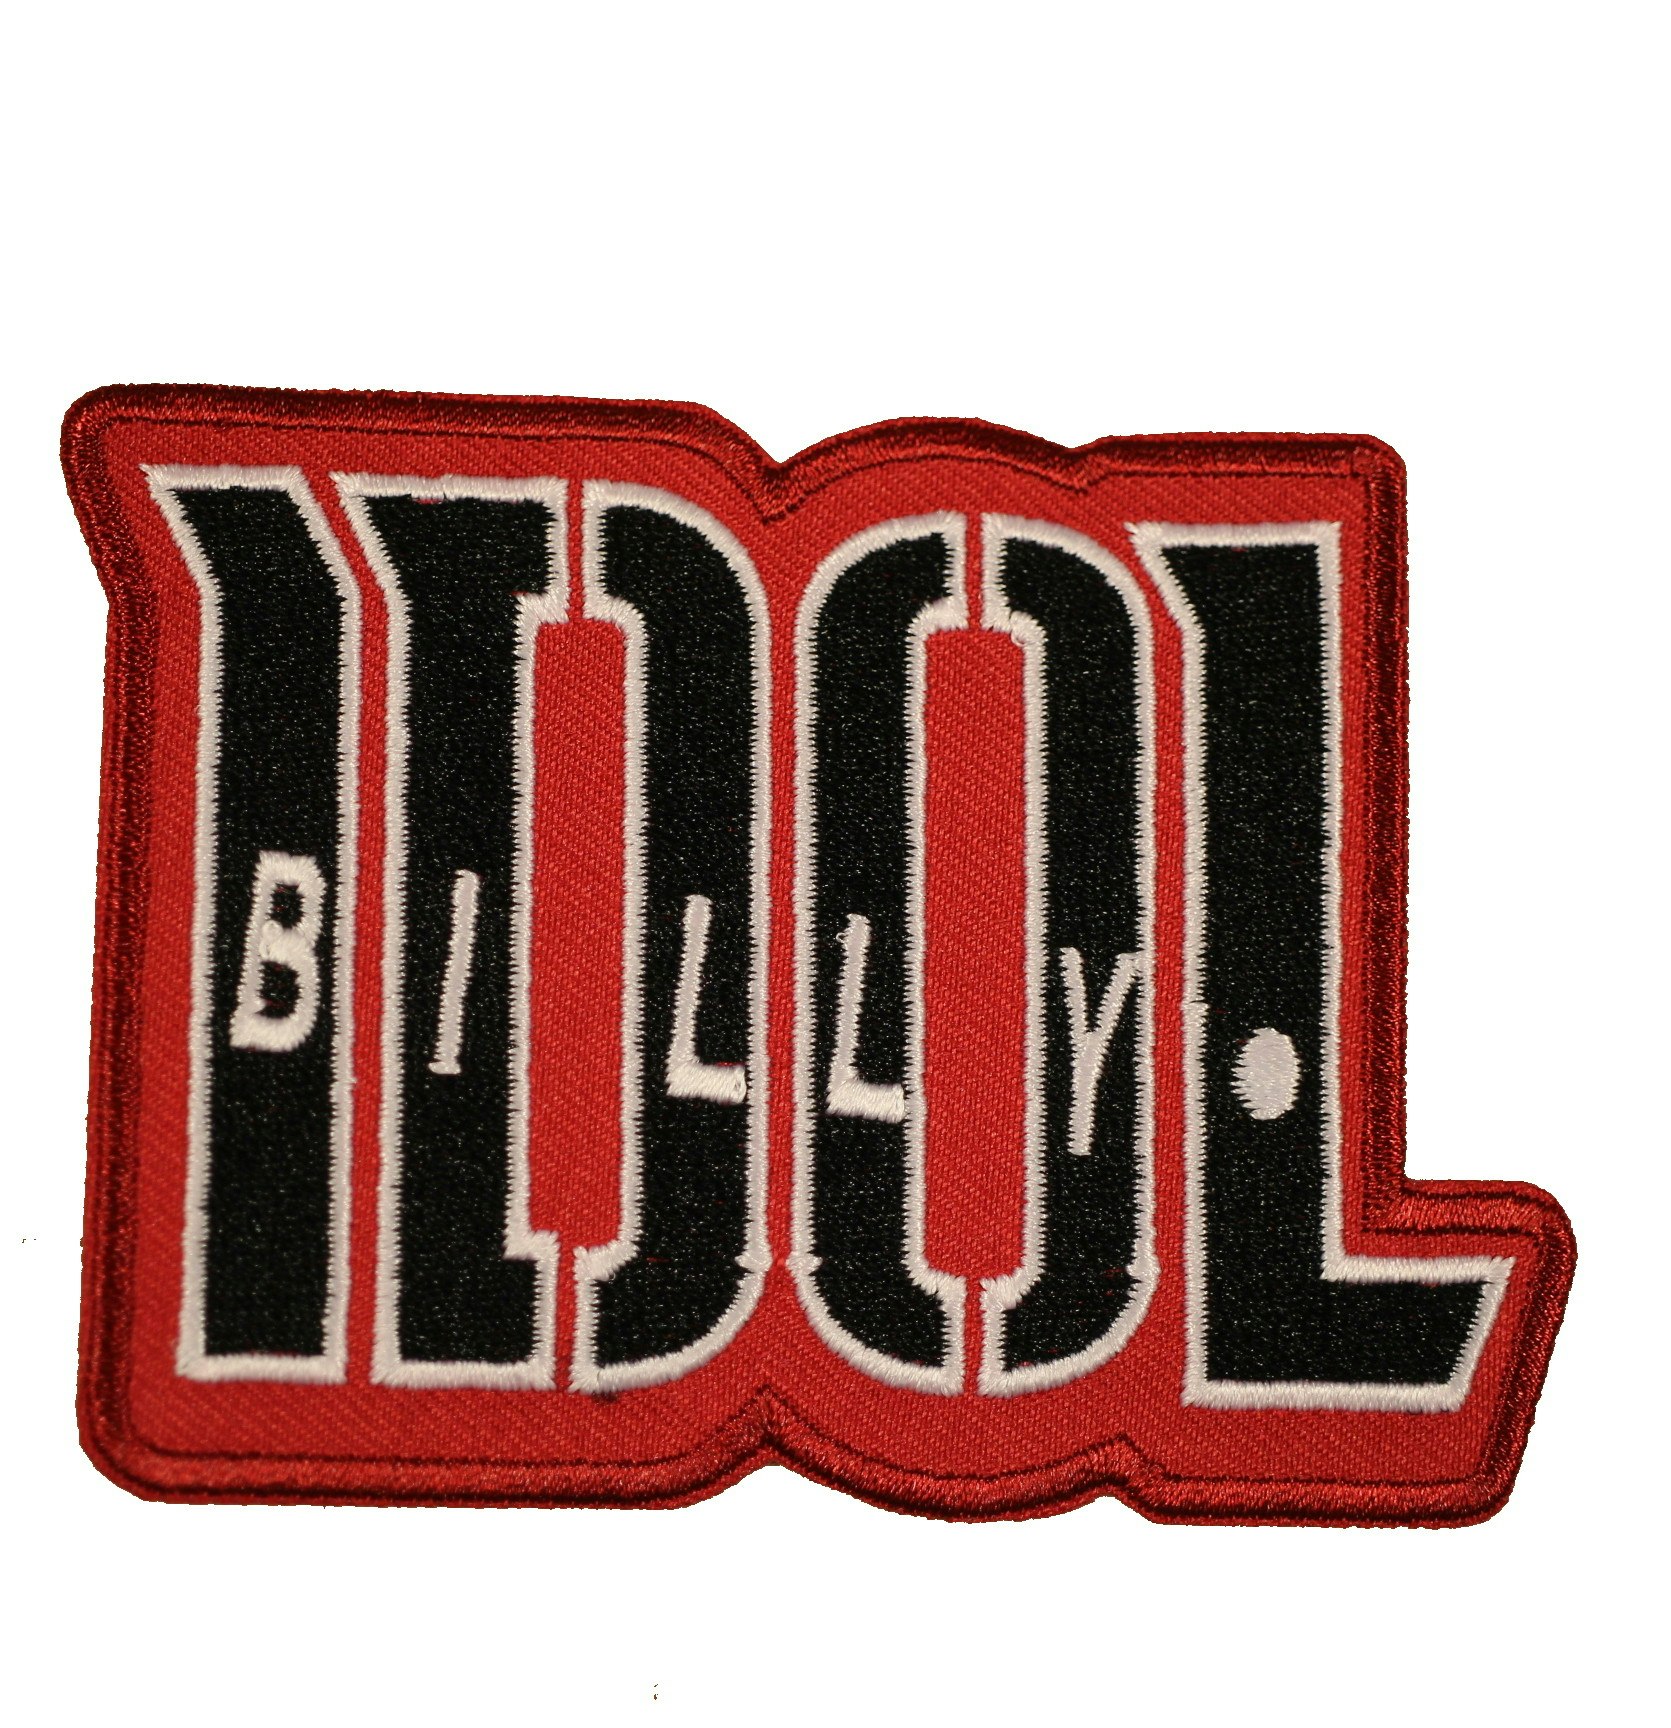 Billy idol logo patch